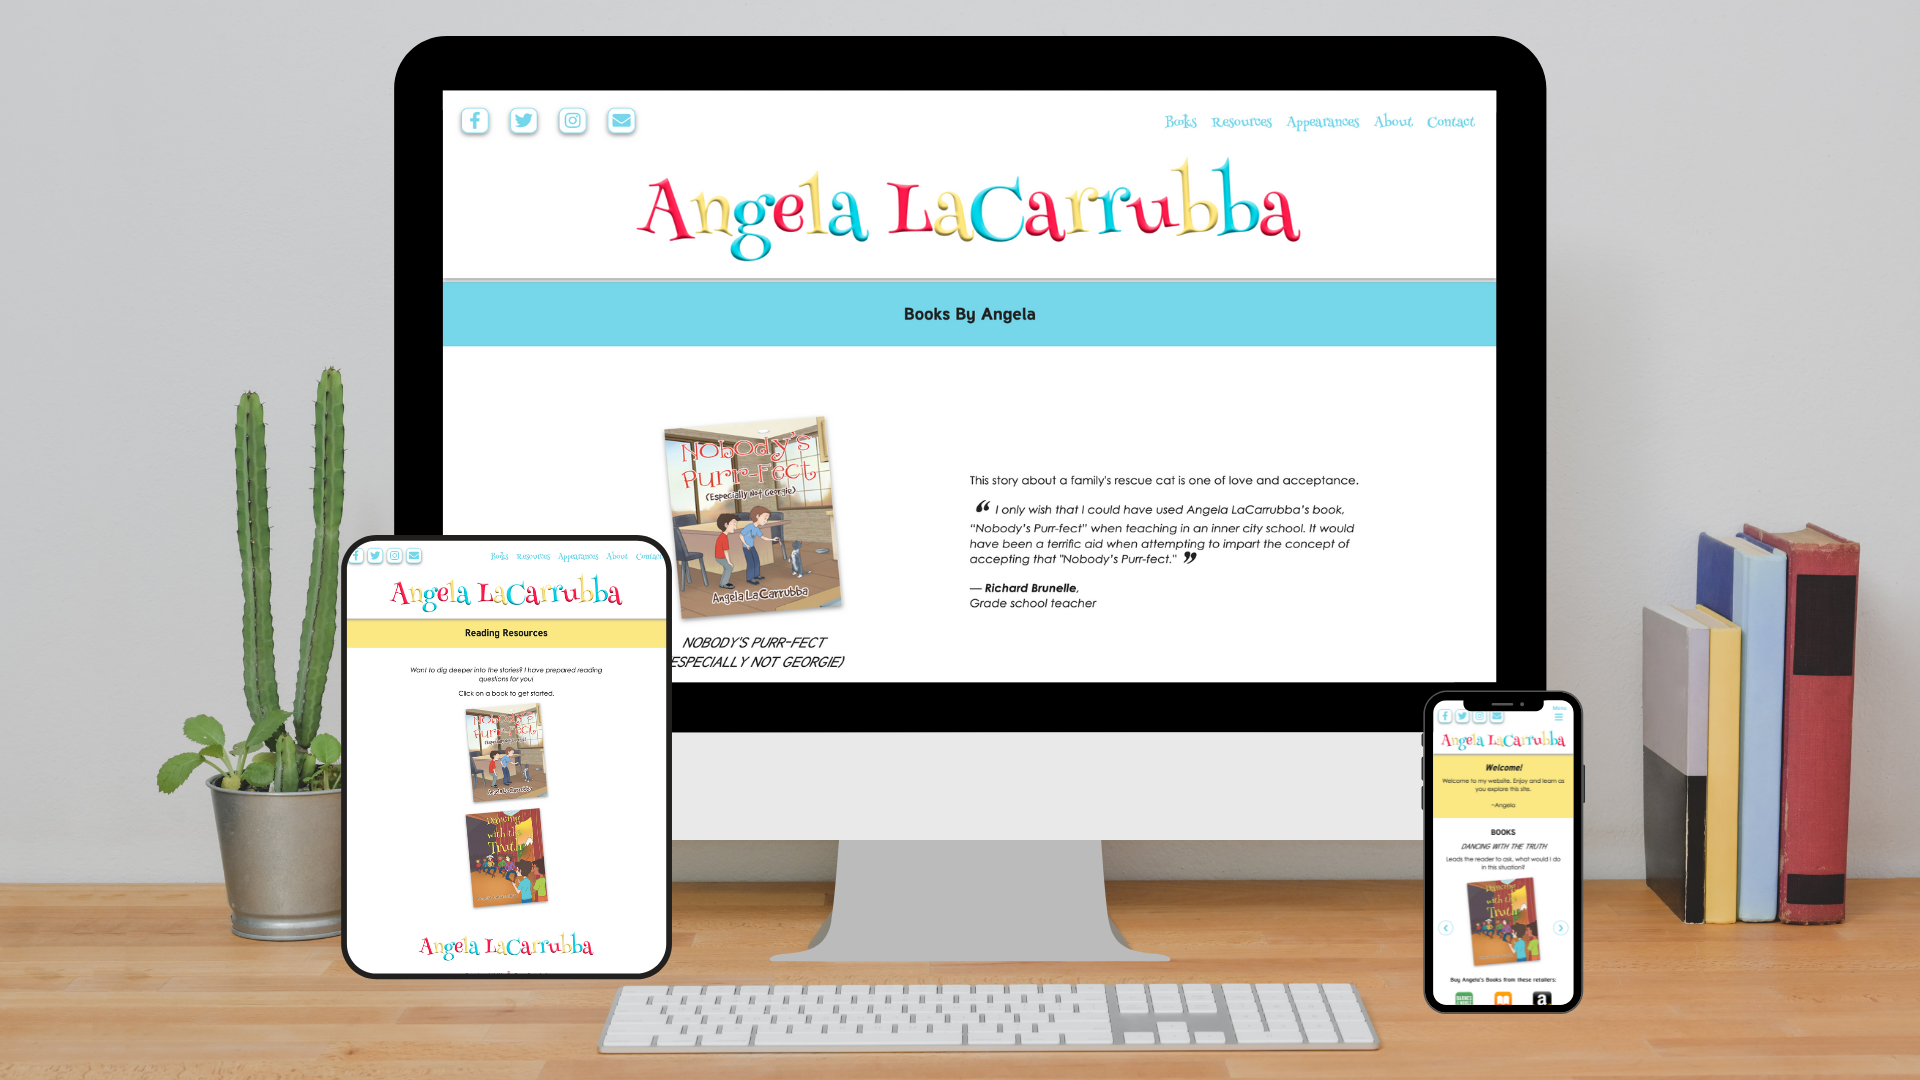 Angela LaCarrubba's Author Website